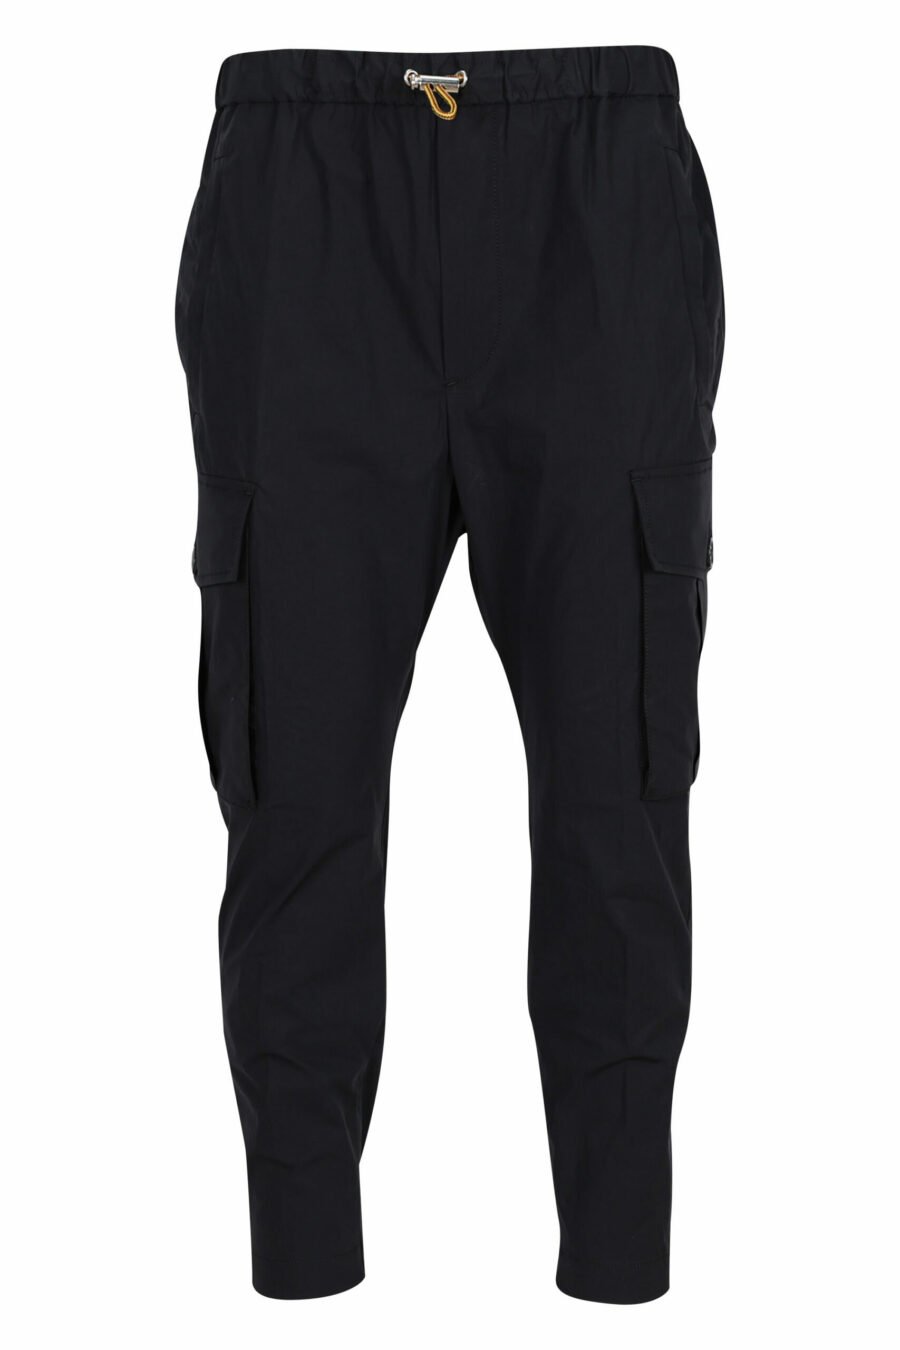 Pantalón negro " pully pant" - 8054148060992 scaled